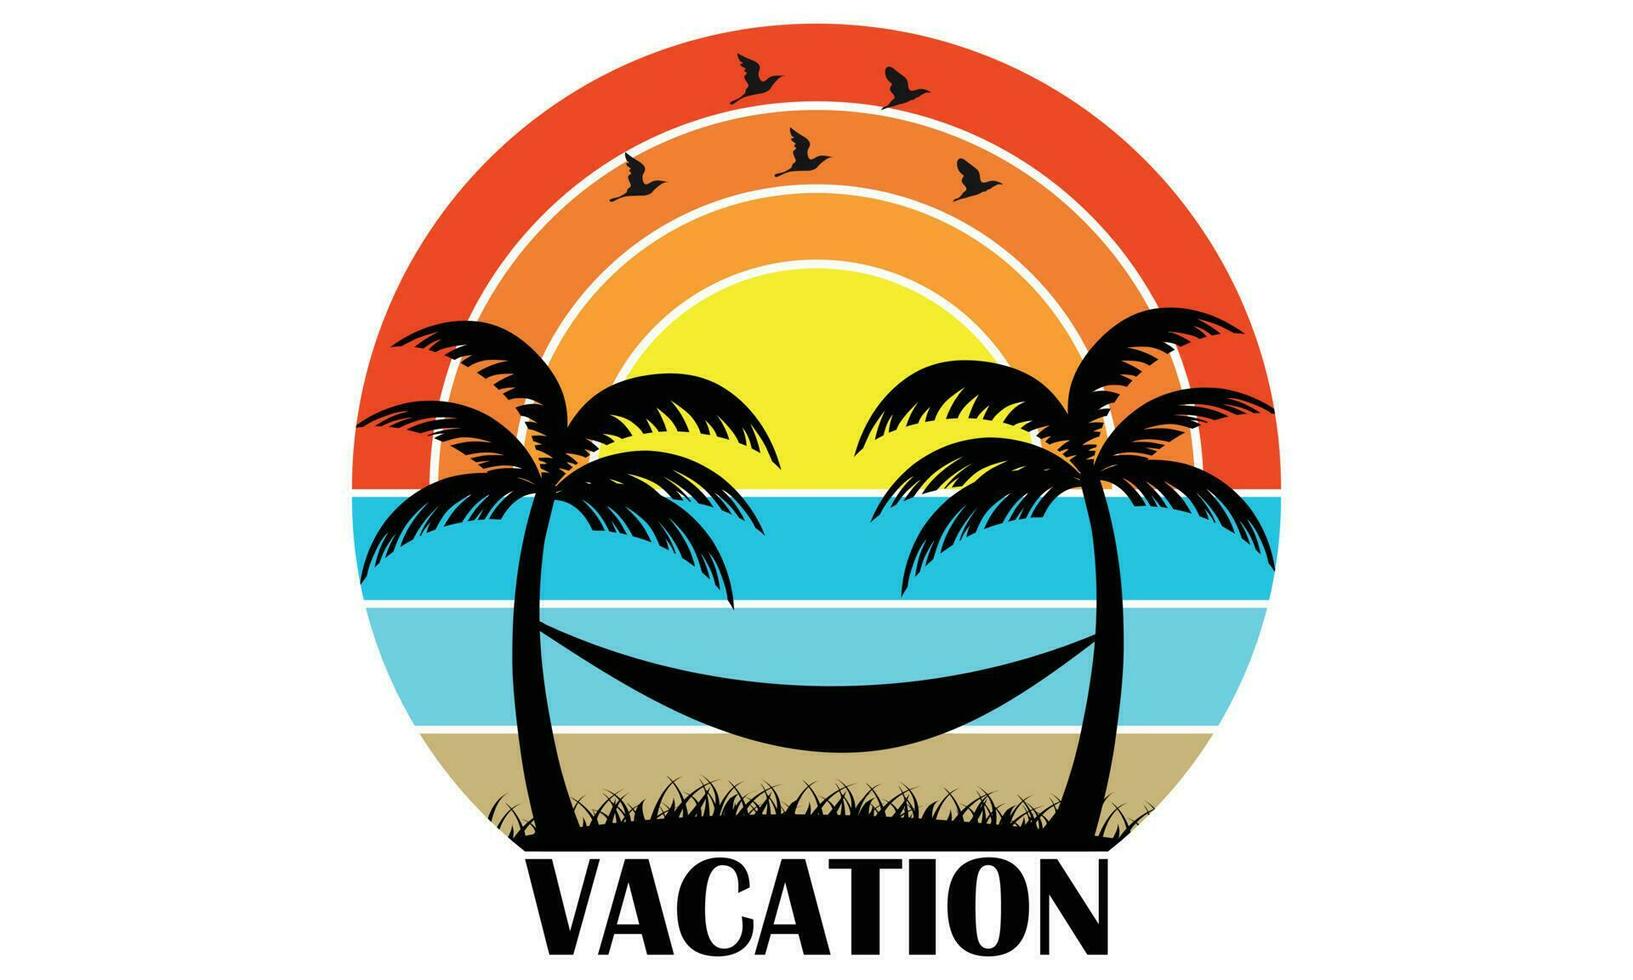 Sommer- Ferien T-Shirt Design - - Vektor Illustration isoliert auf Weiß hintergrund.t-shirt Design. Liebe Sommer- Urlaub. zum Aufkleber, T-Shirts, Tassen, Poster, reisen, draussen, Strand, Paradies, Surfen